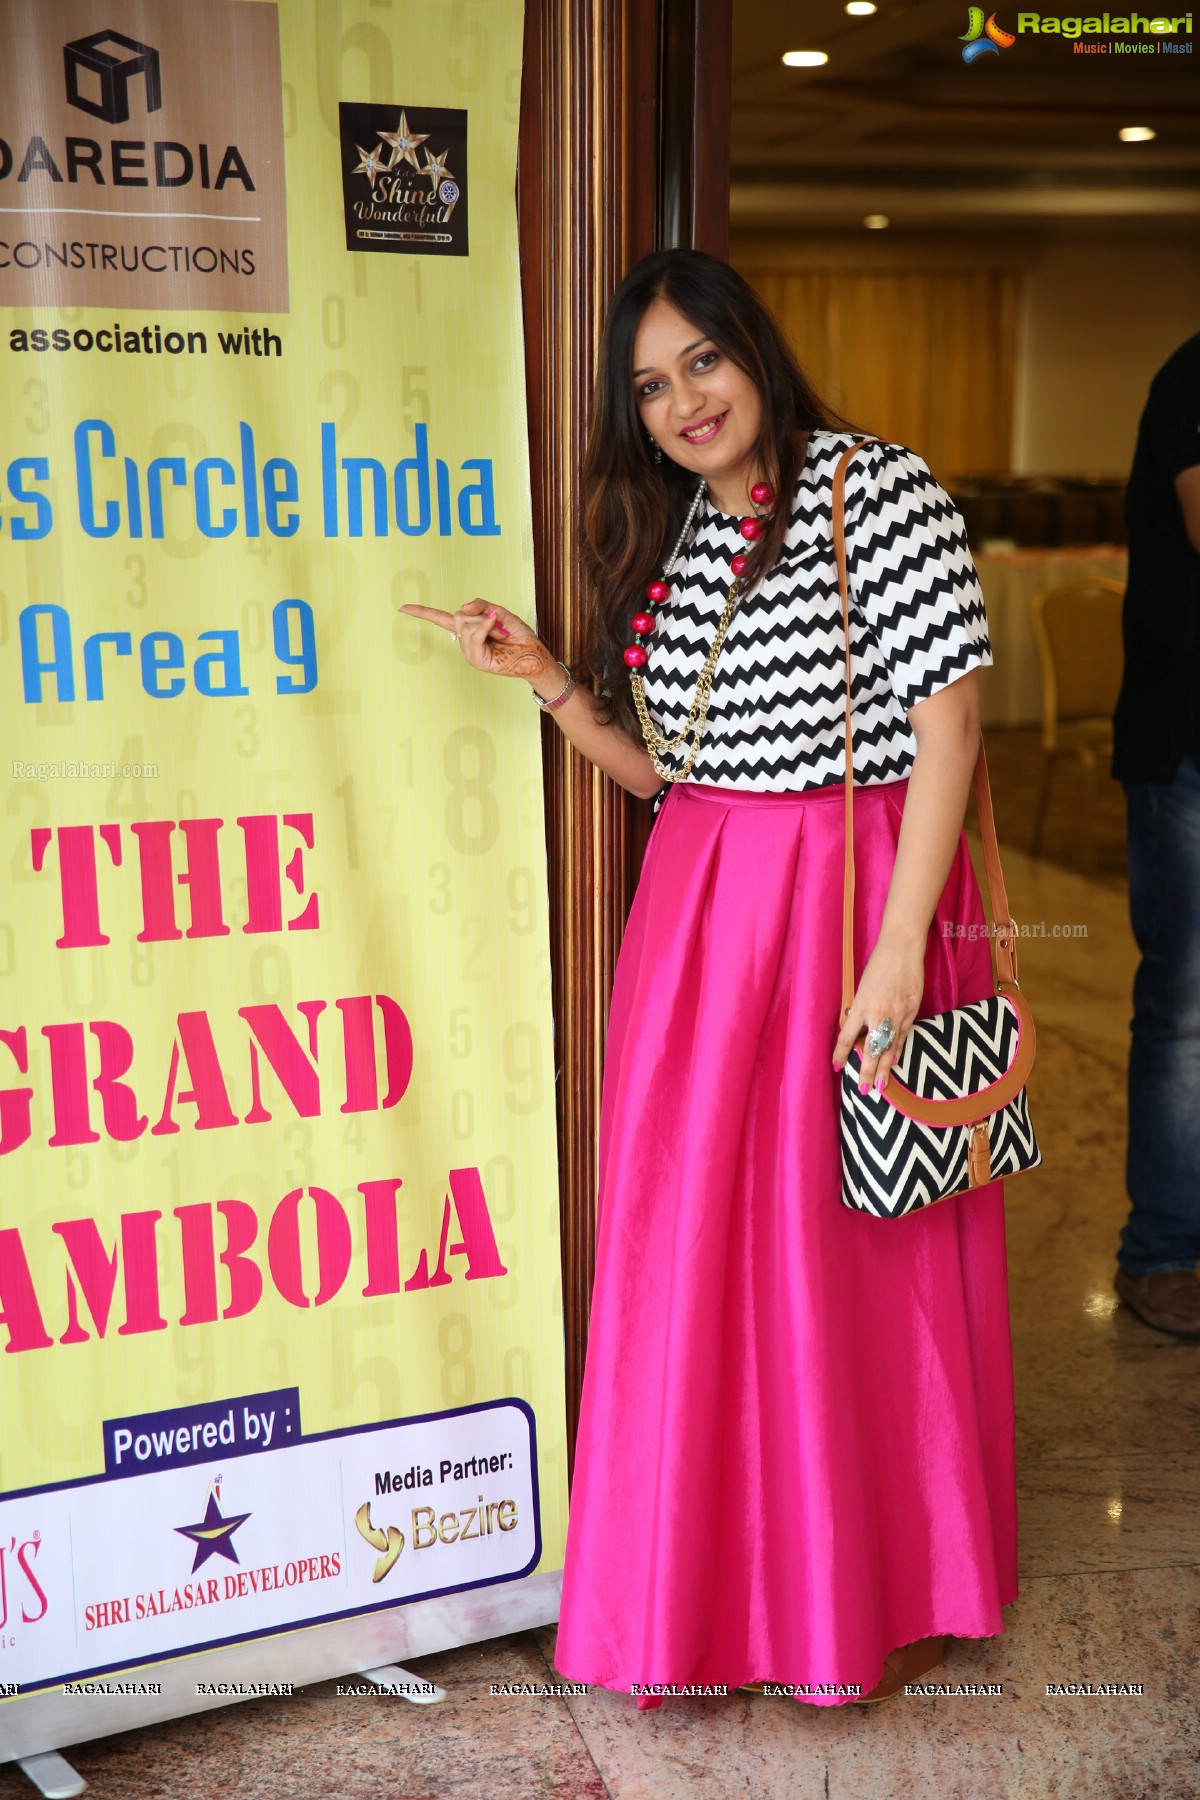 The Grand Tambola By Daredia Constructions & Ladies Circle India Area 9 @ Ala Liberty , Banjara Hills